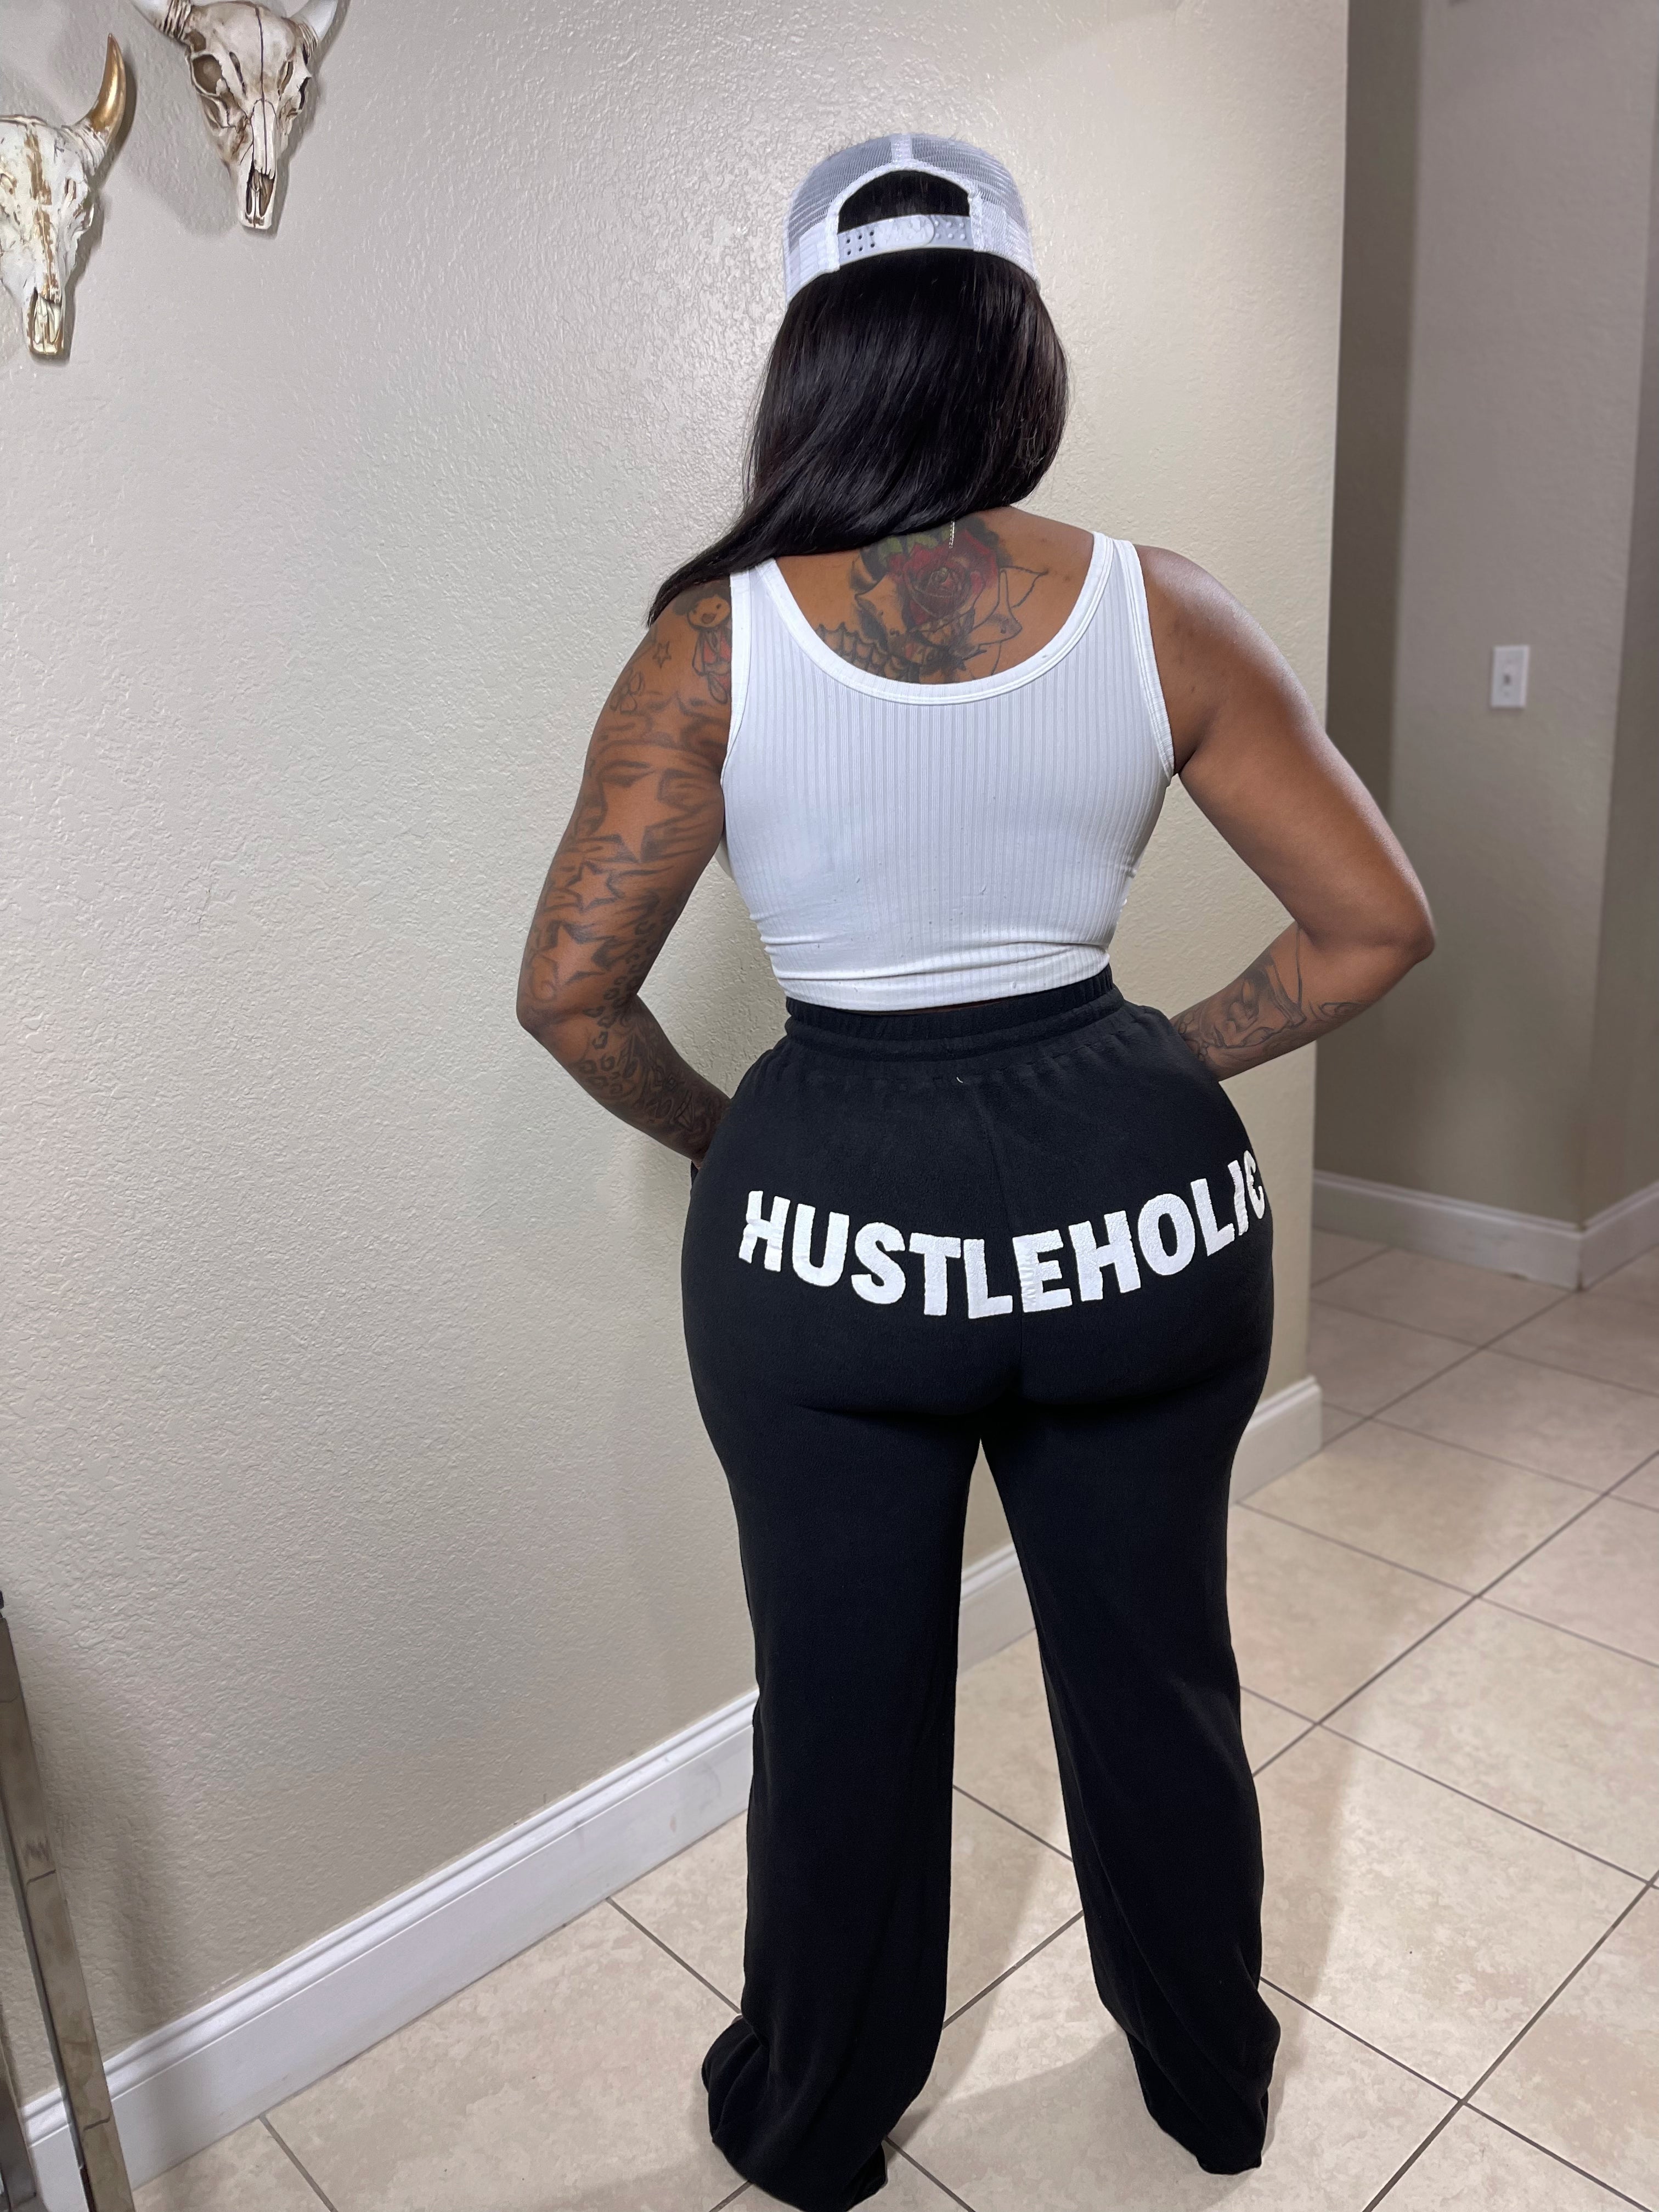 Hustleholic pants